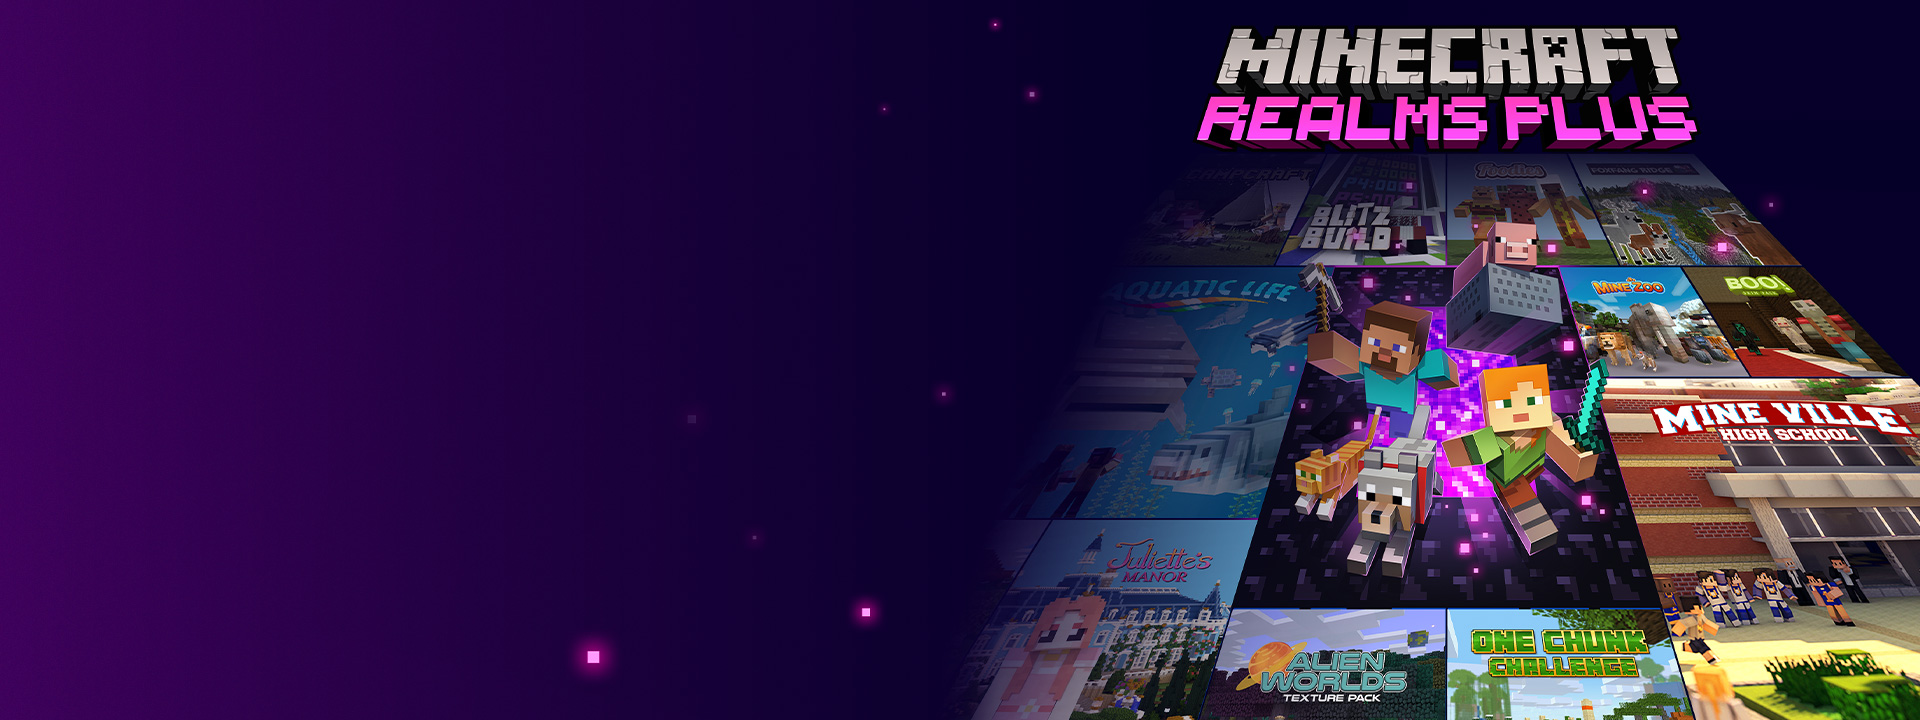 Minecraft Realms Plus, персонажи Minecraft выходят из портала Nether, а за ними расположились обложки других игр